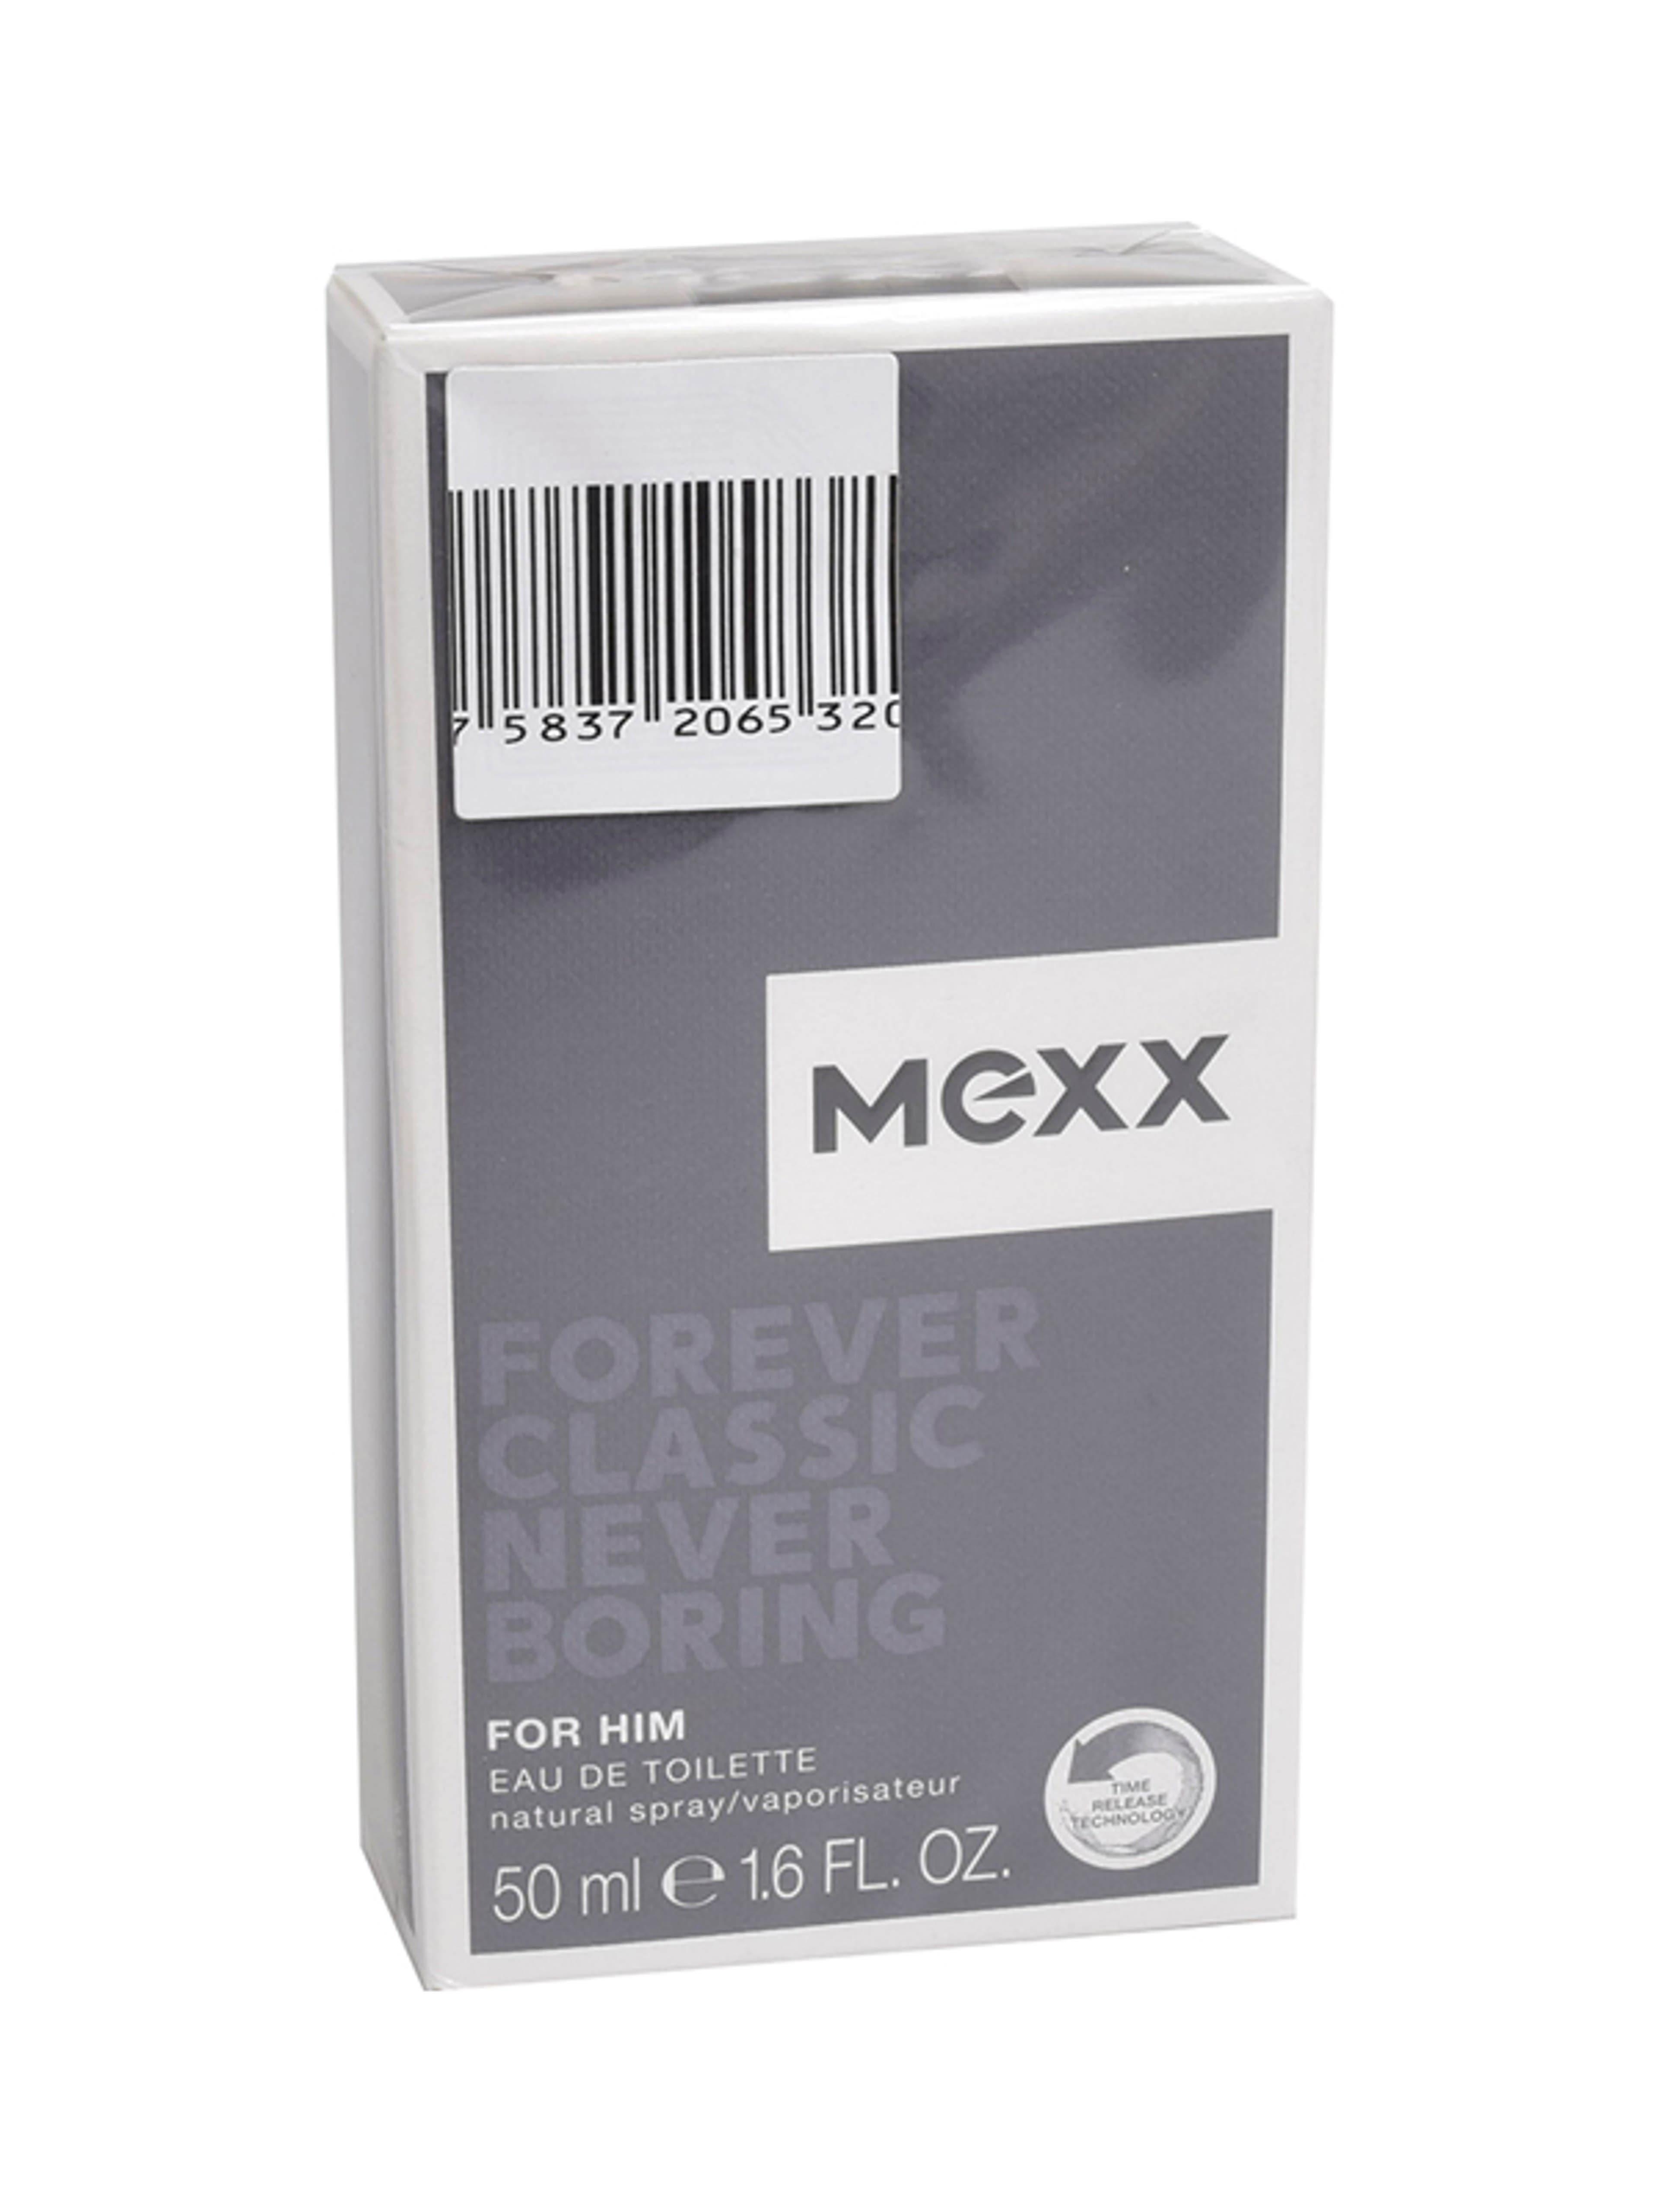 Mexx forever classic never boring férfi eau de toilette - 50 ml-1